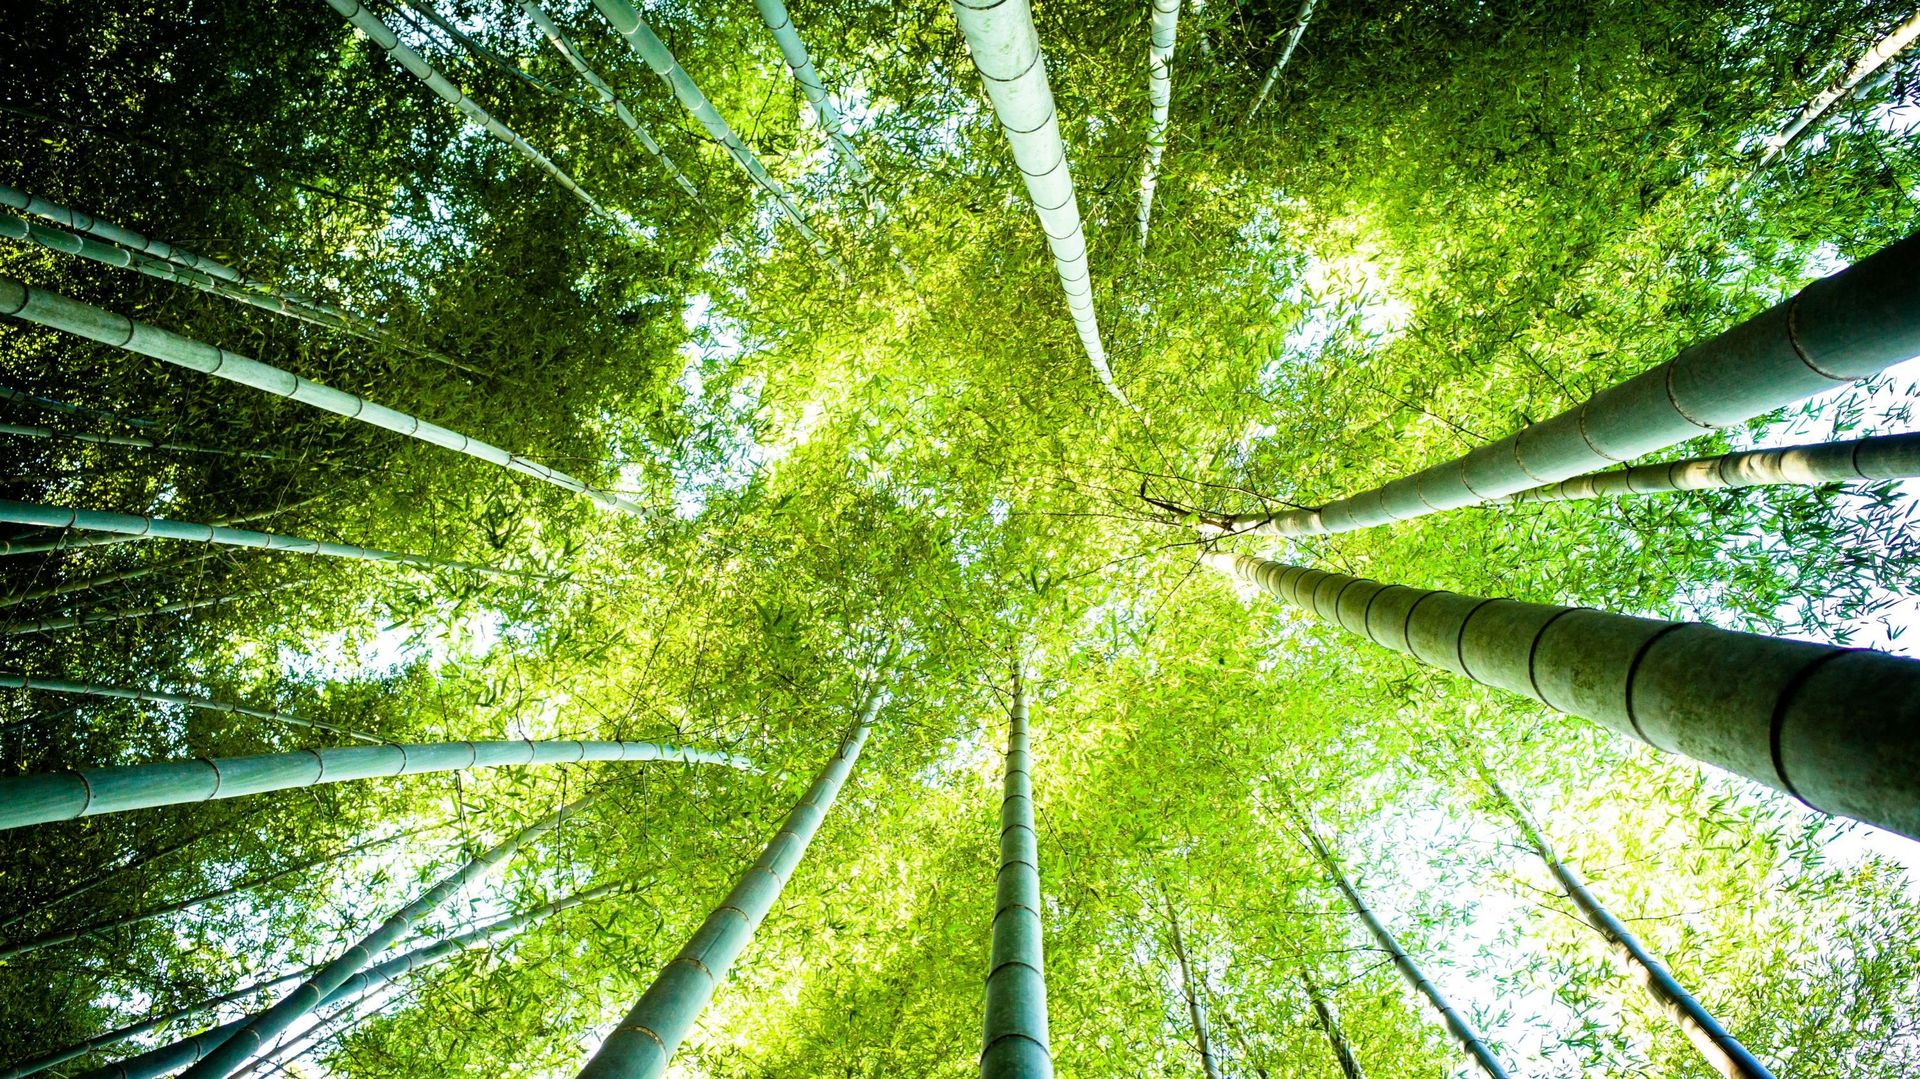 La croissance du bambou est rapide, ce qui lui permet d’être récolté 4 à 6 fois par an.